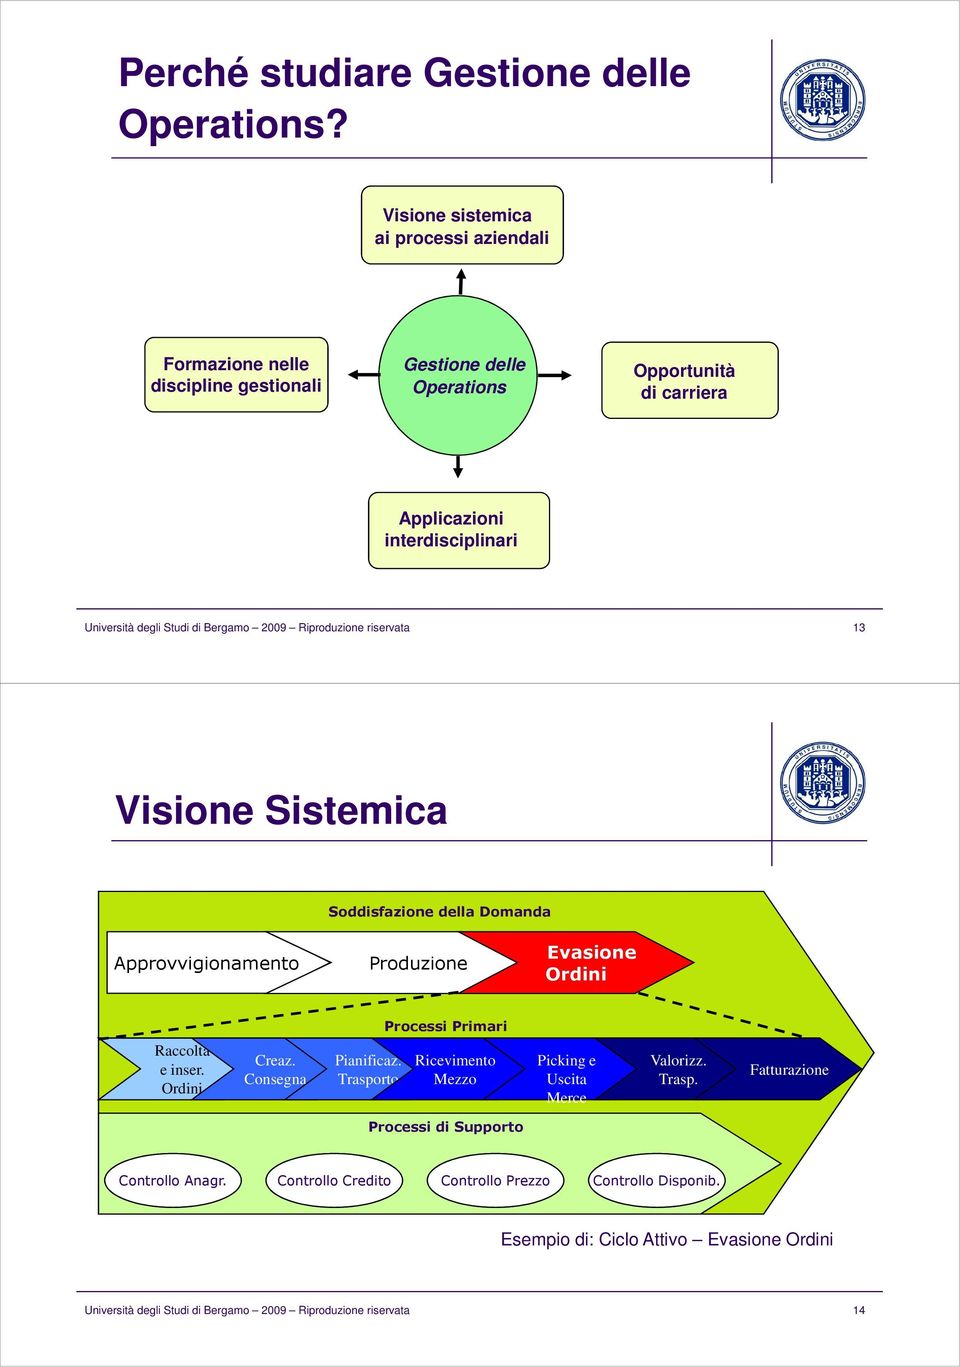 Studi di Bergamo 2009 Riproduzione riservata 13 Visione Sistemica Soddisfazione della Domanda Approvvigionamento Produzione Evasione Ordini Processi Primari Raccolta e inser.